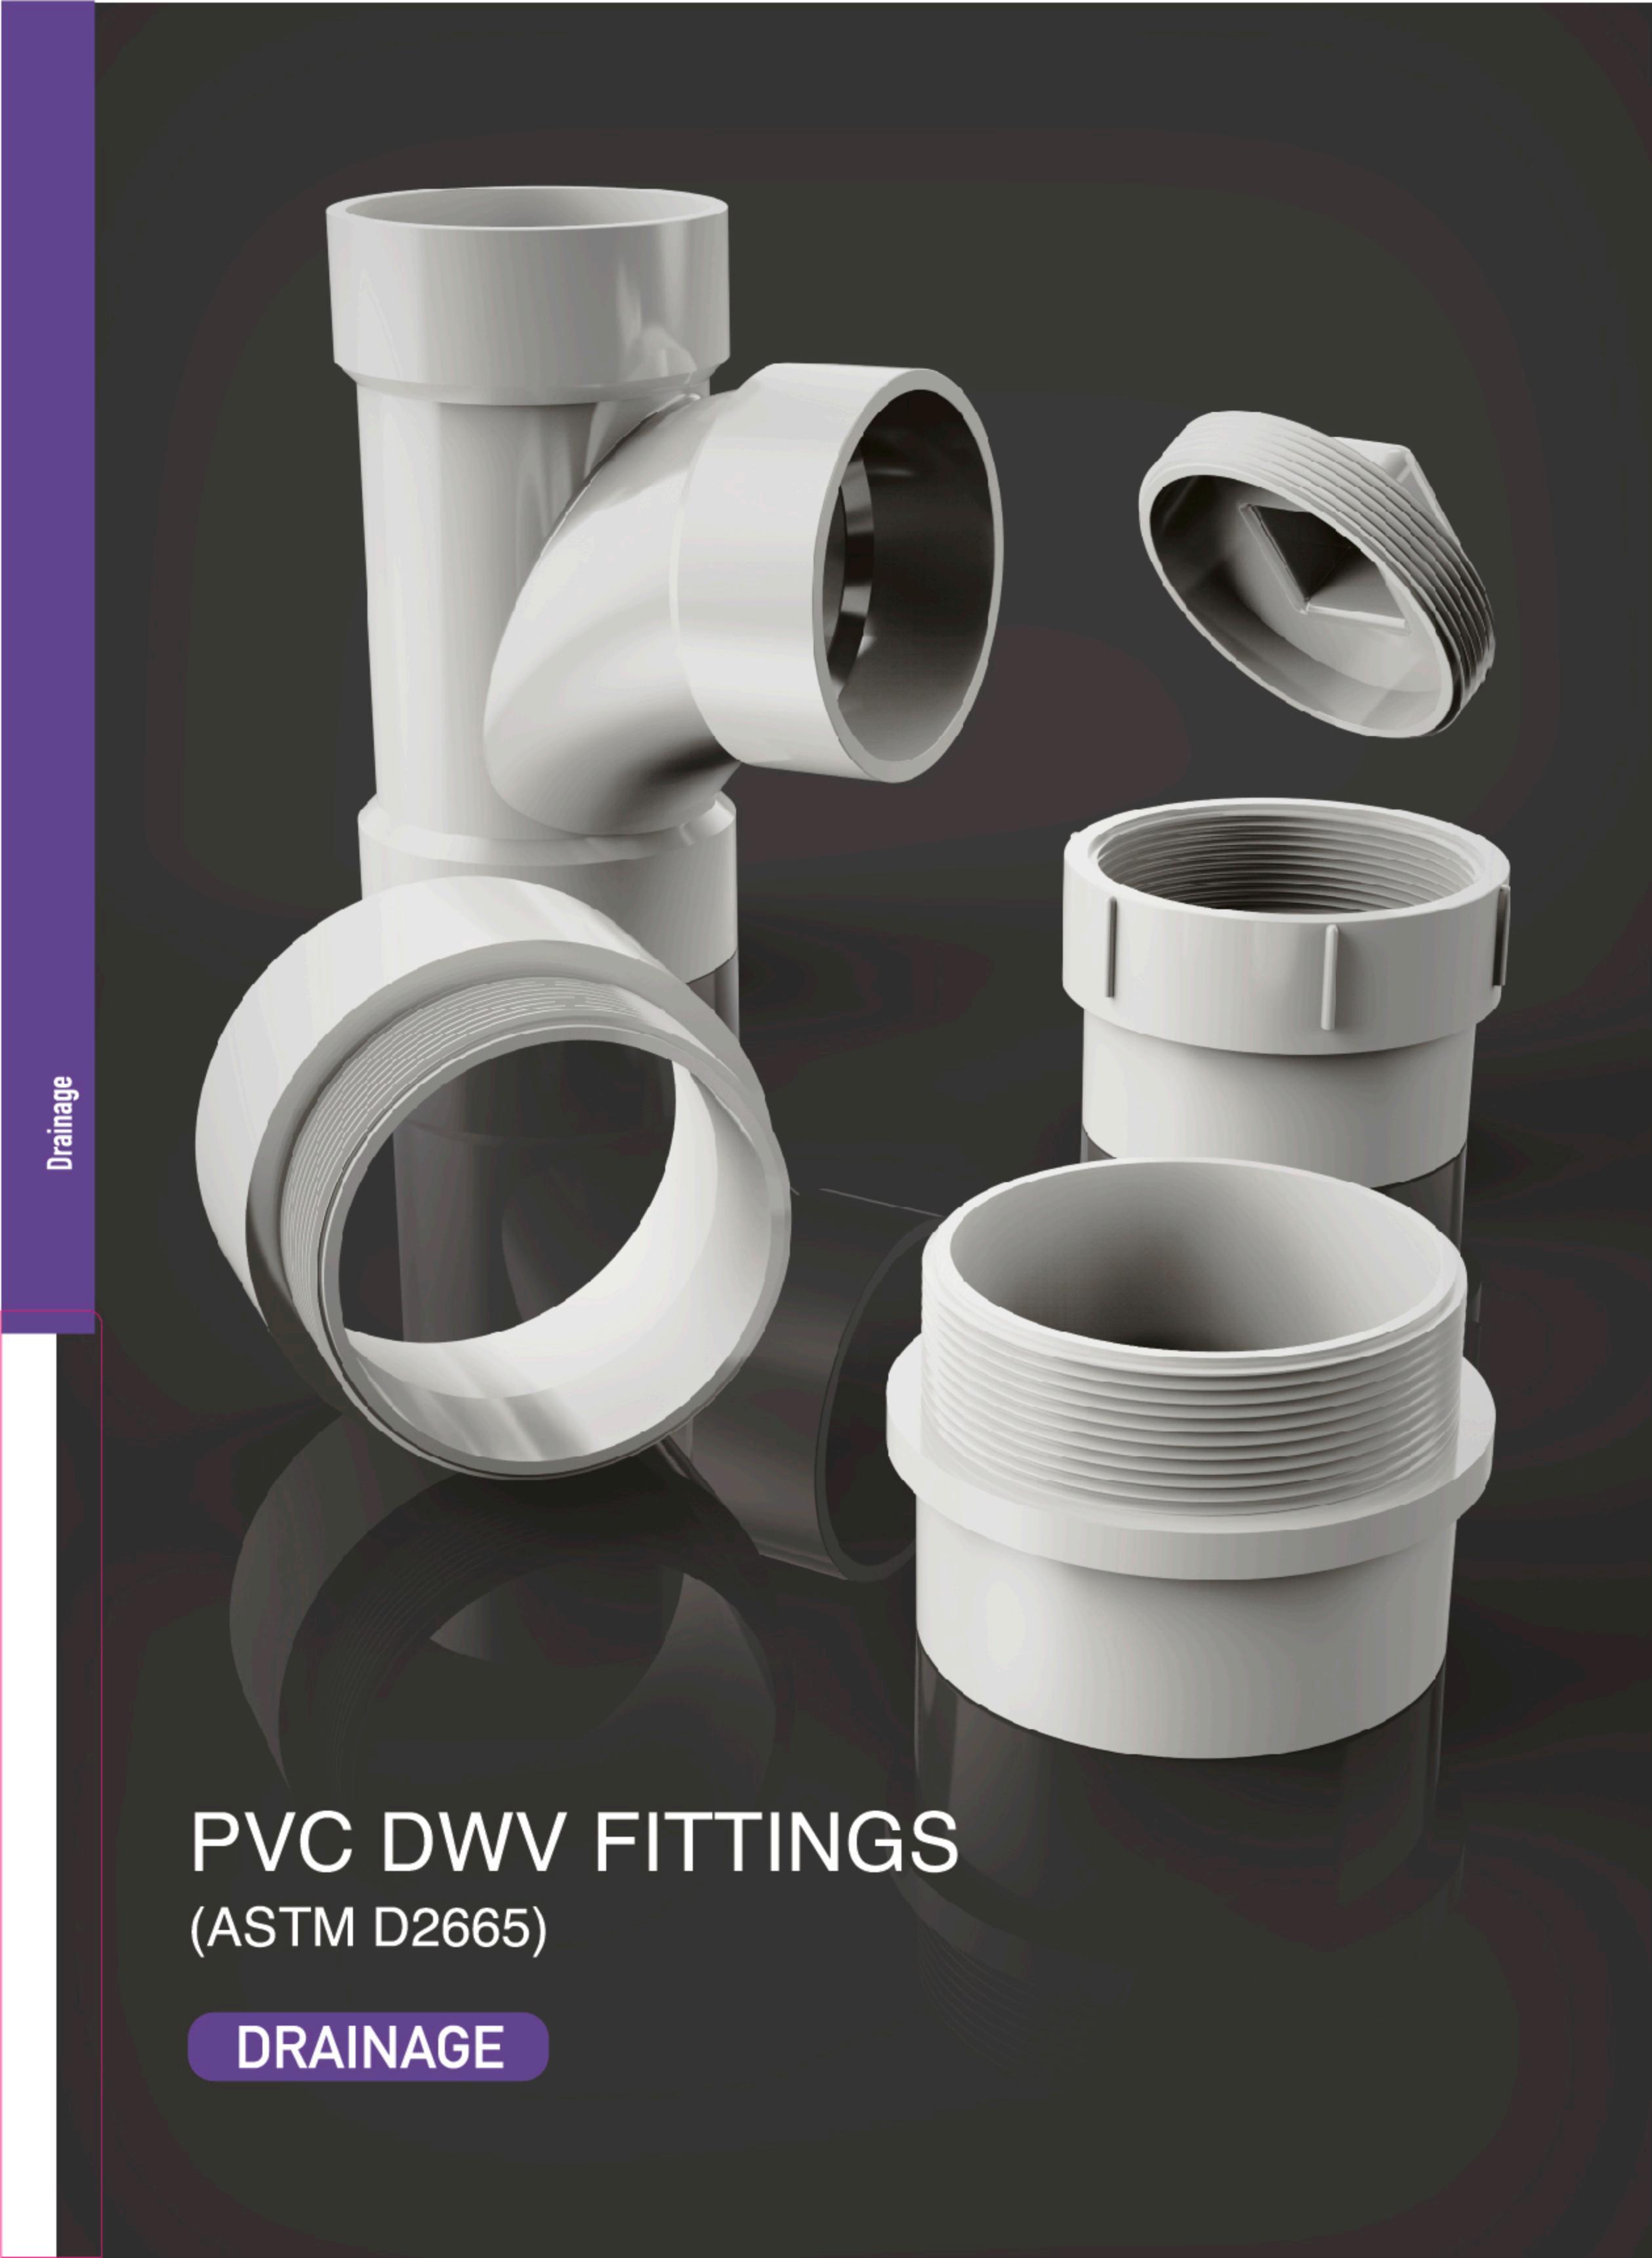 ACCESORIOS DWV DE PVC PARA ASTM D2665